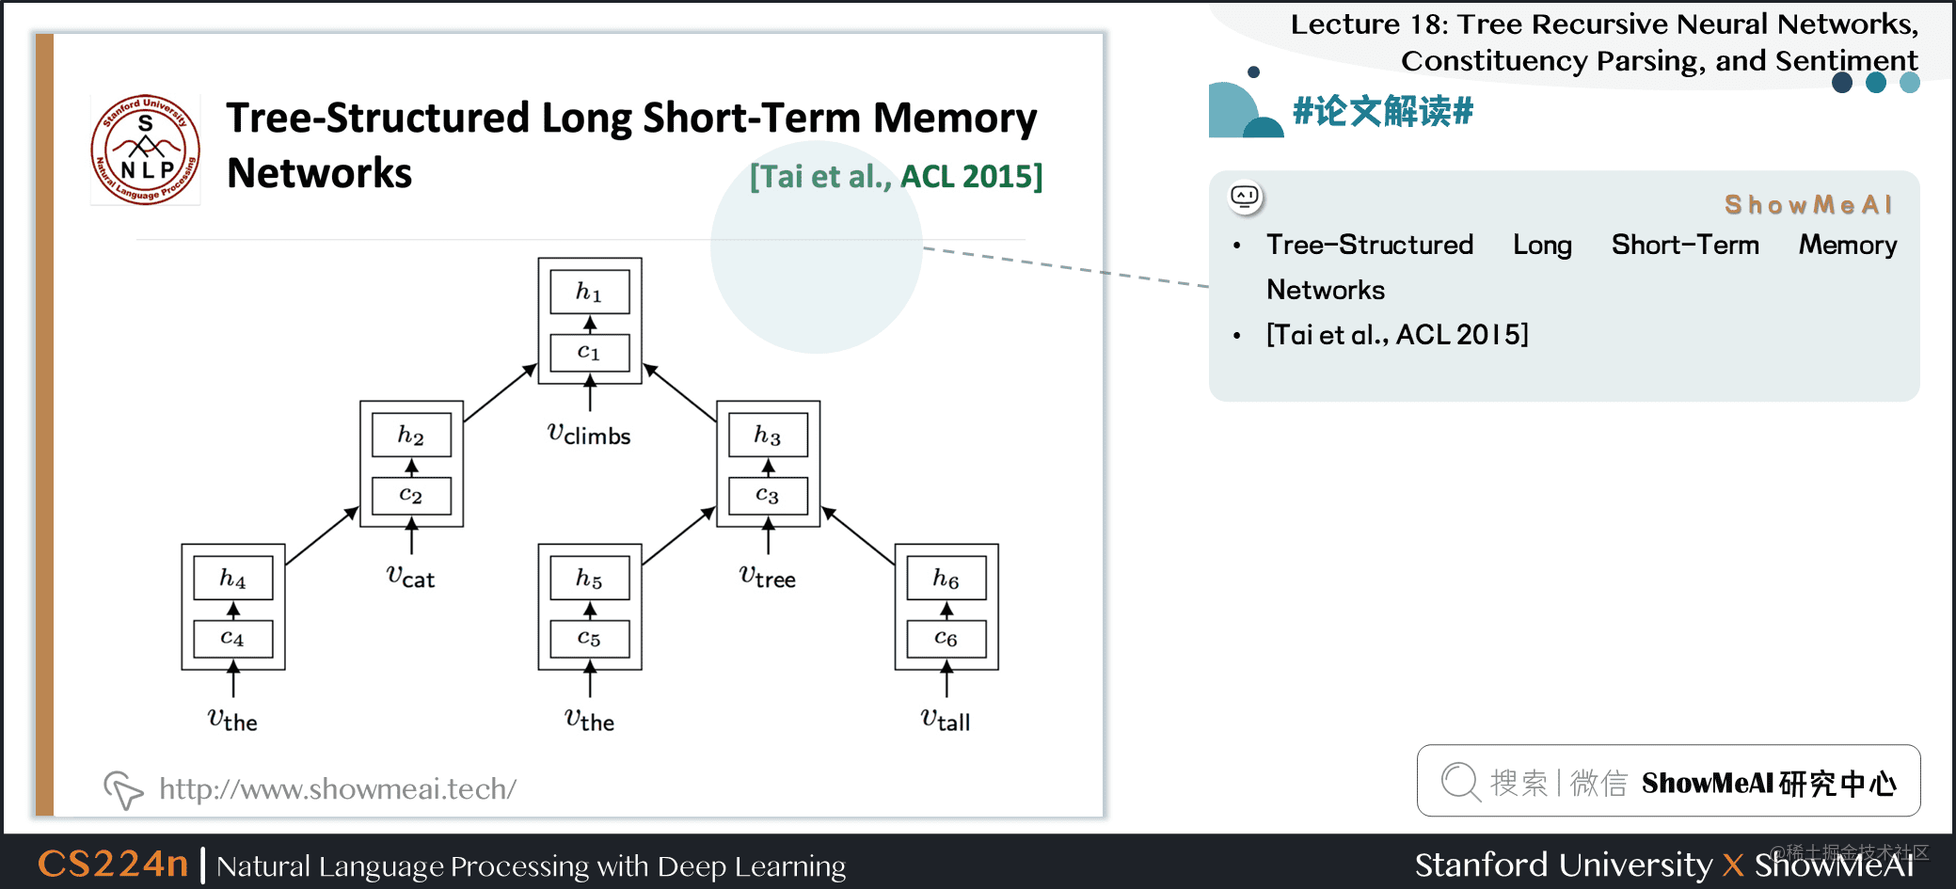 #论文解读# Tree-Structured Long Short-Term Memory Networks